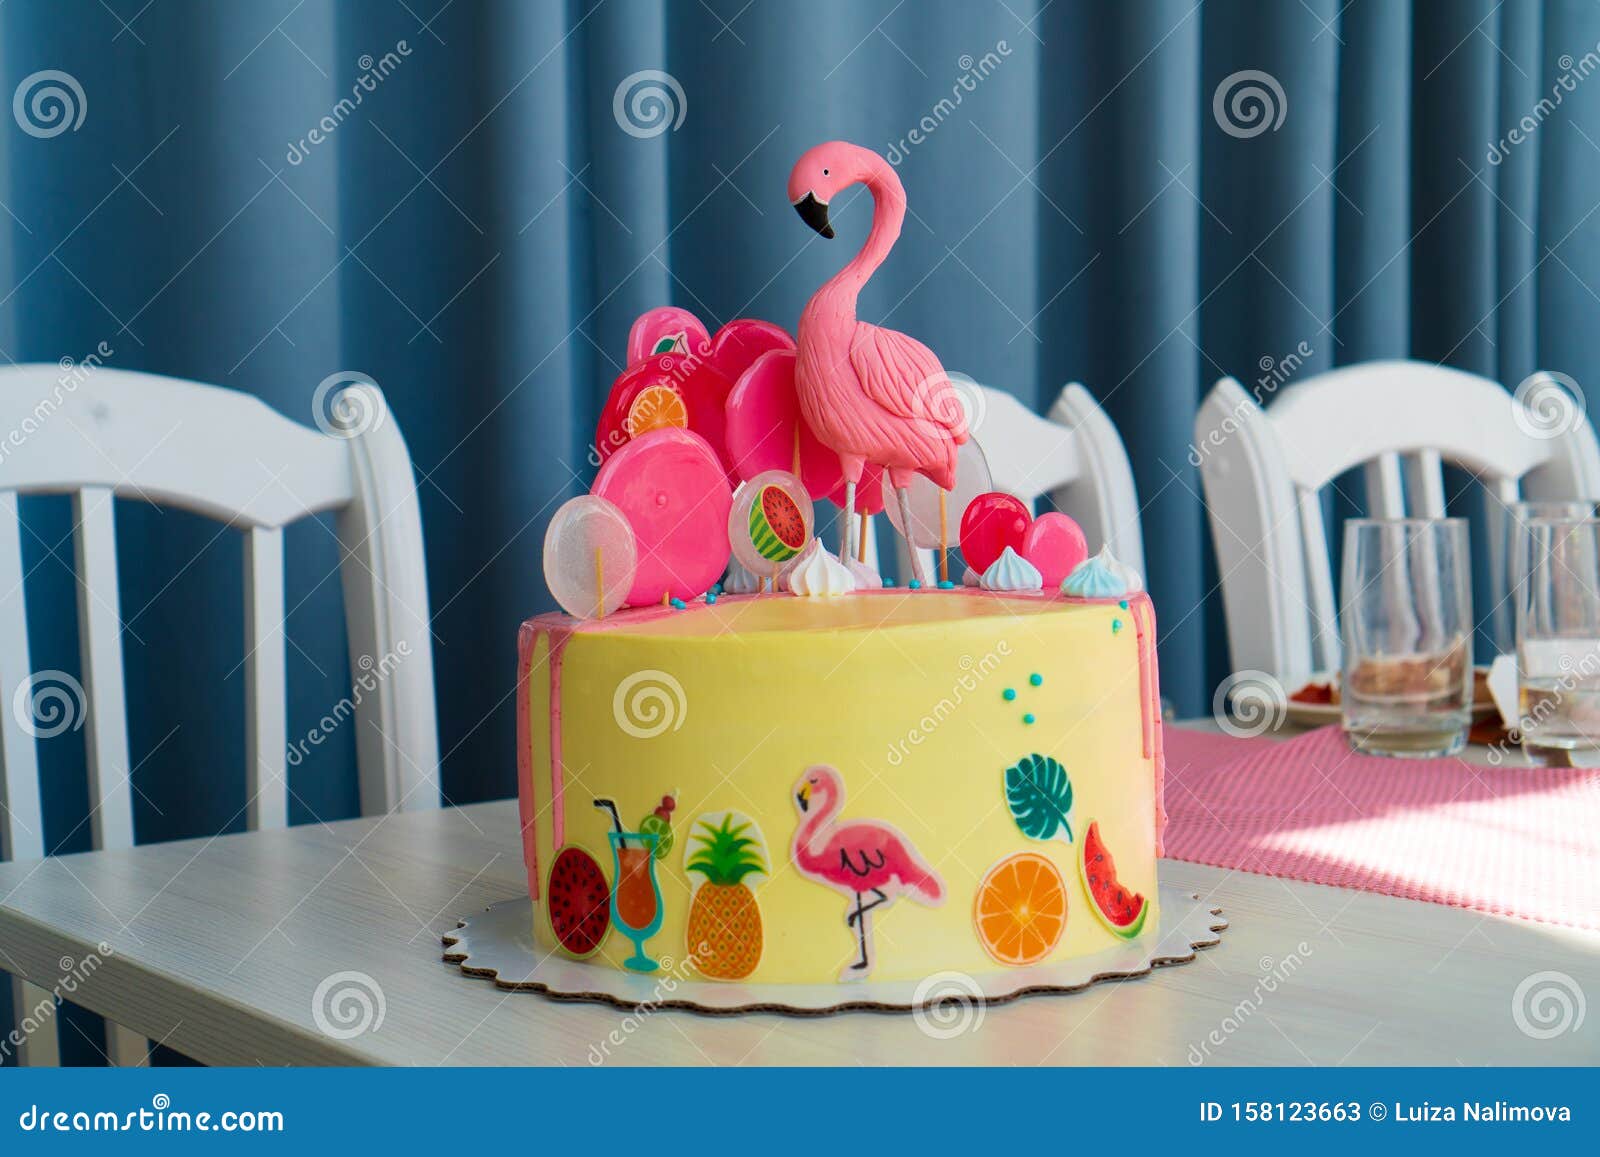 夏威夷派对上的火烈鸟蛋糕桌上的儿童生日蛋糕库存图片 图片包括有